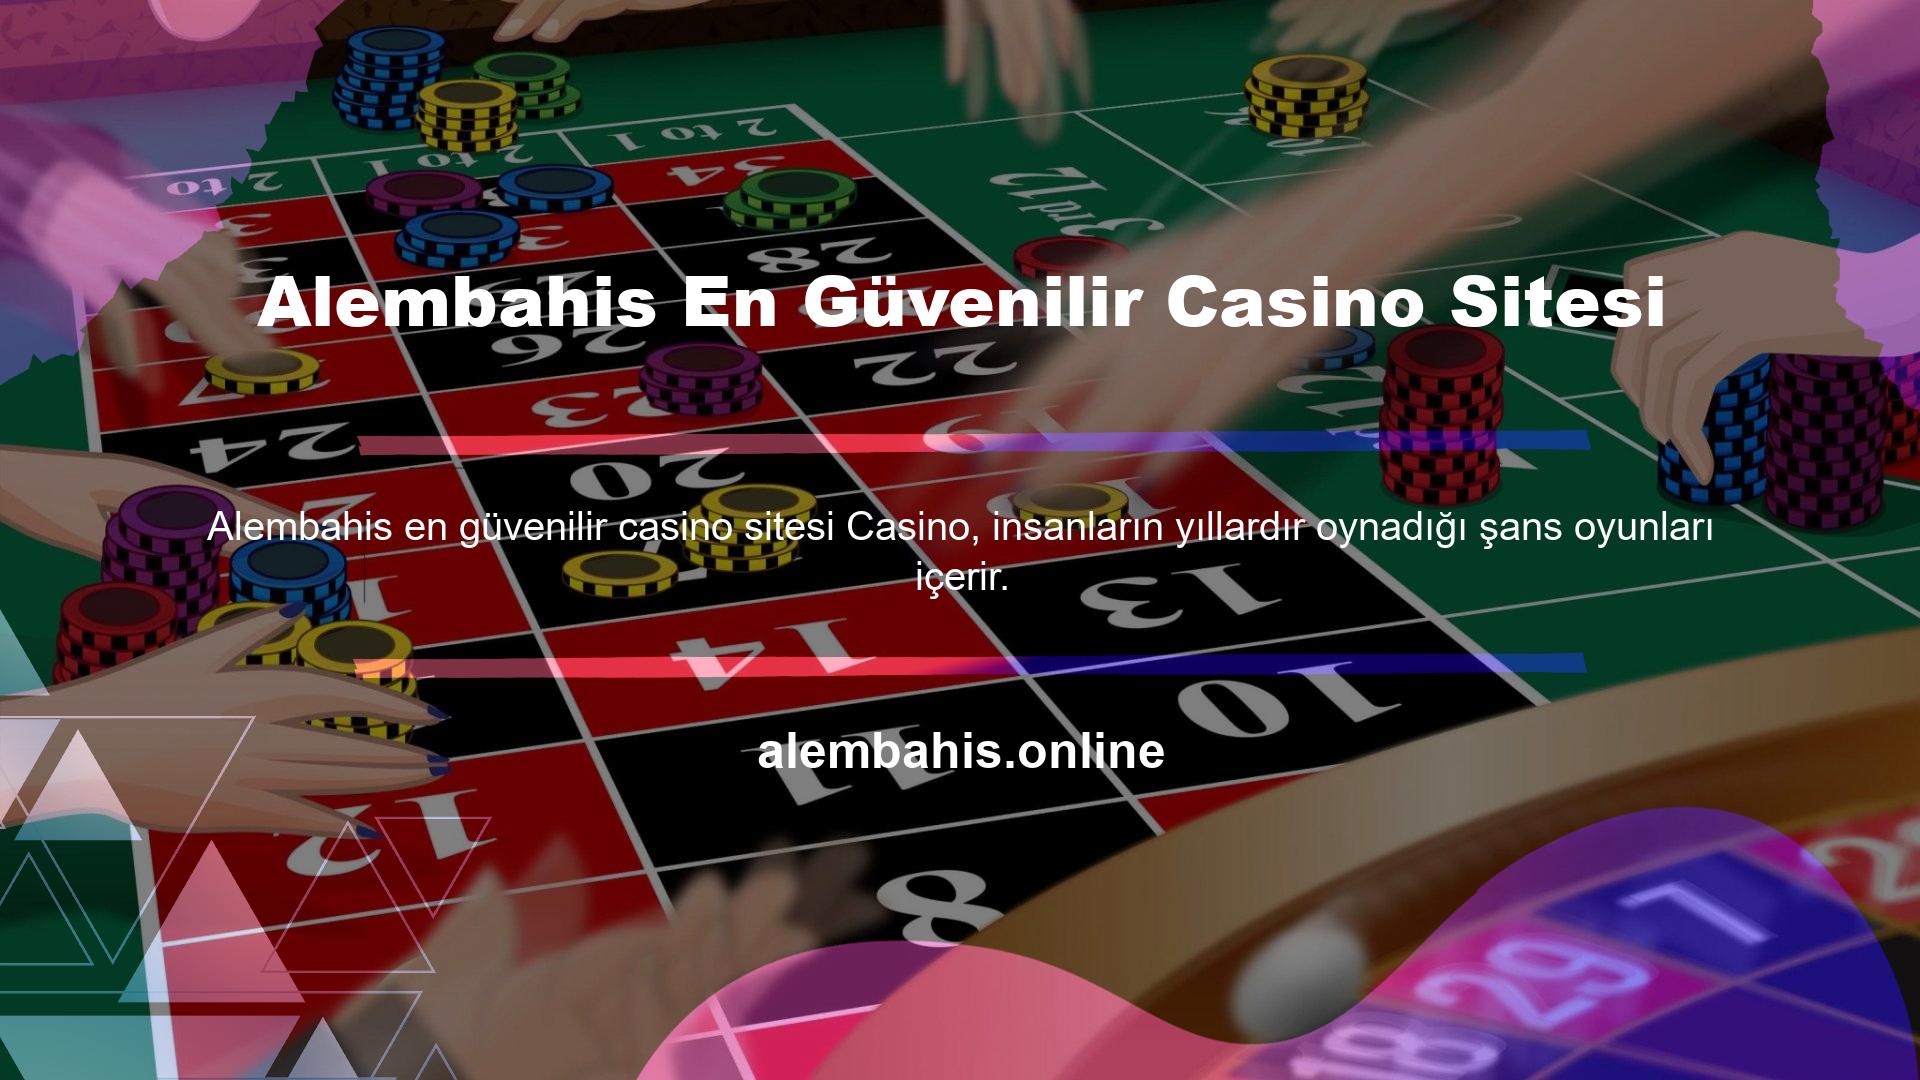 Alembahis en güvenilir casino sitesi